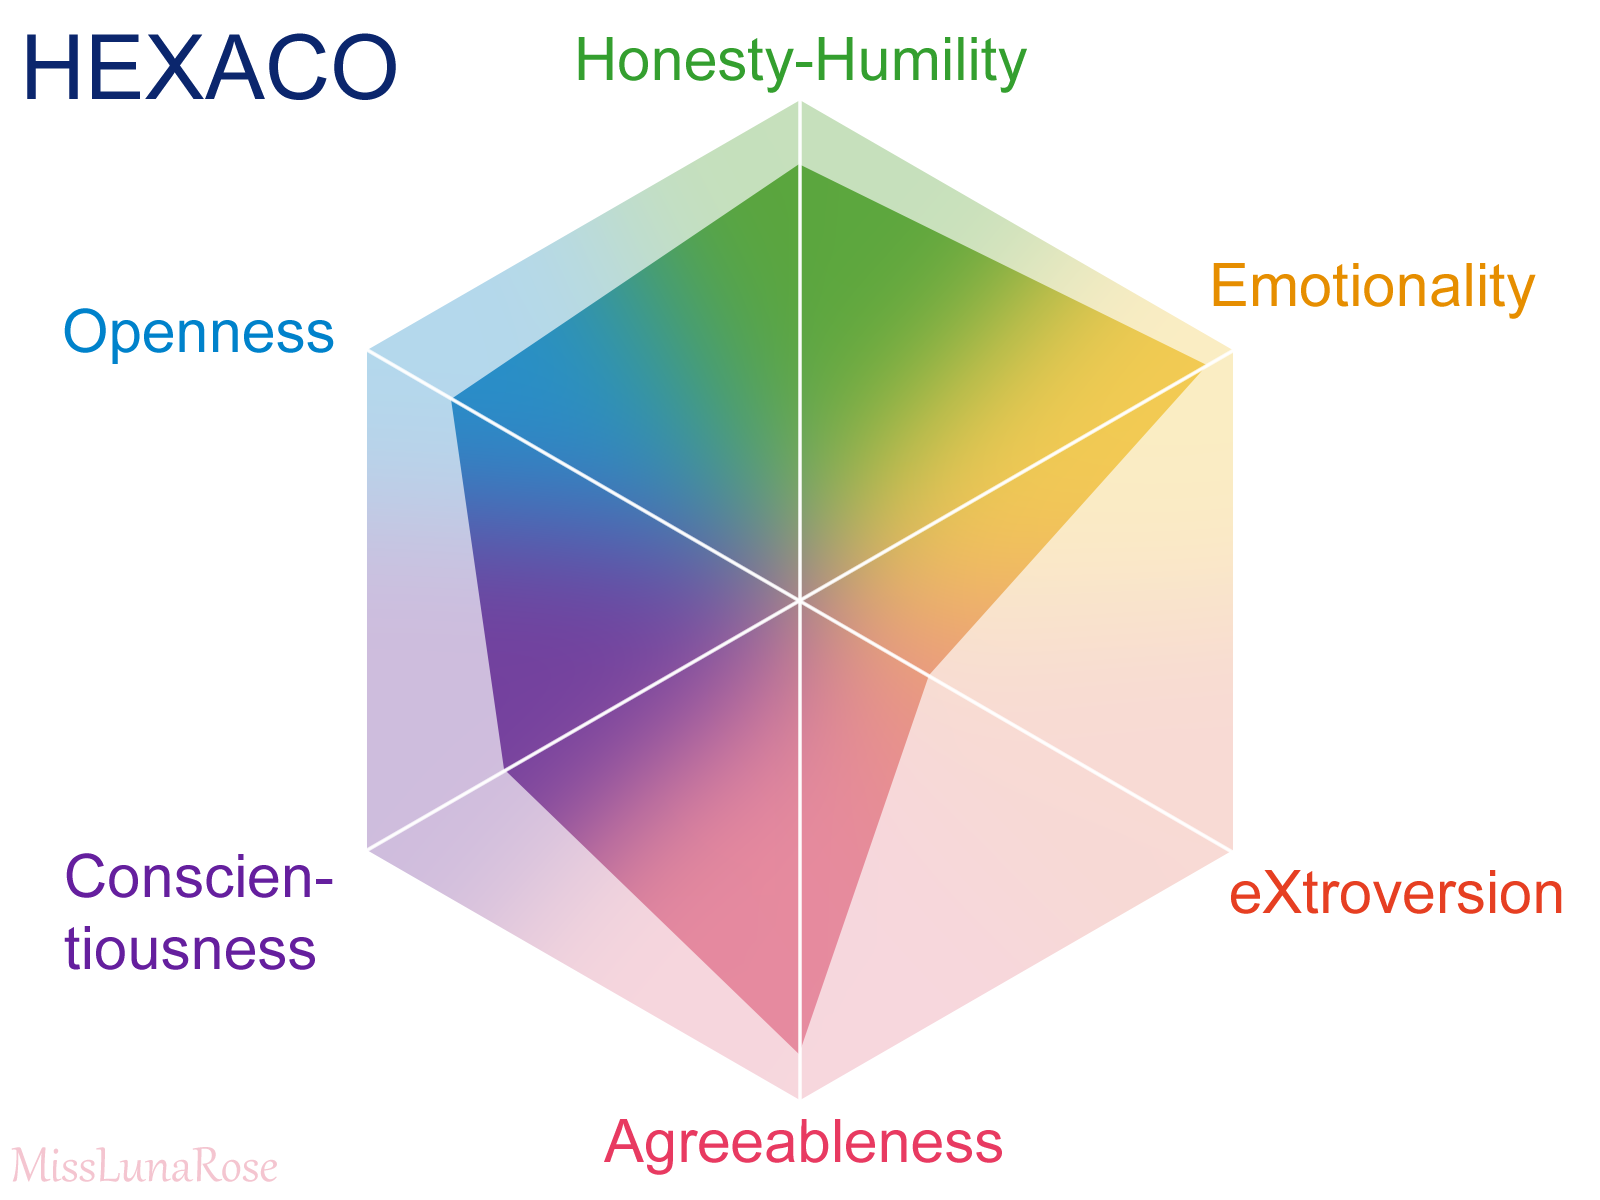 HEXACO Personality Inventory